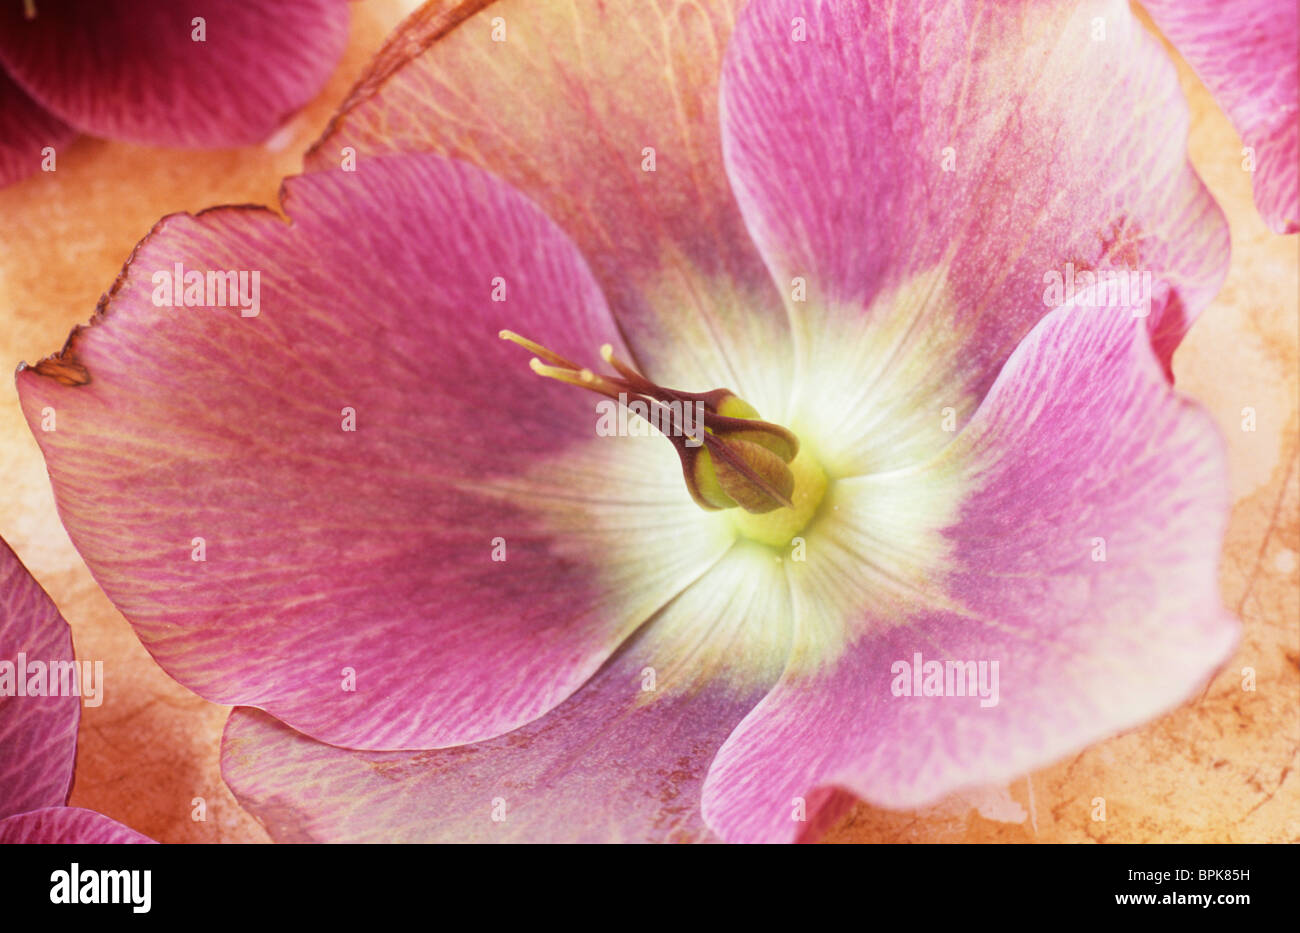 Nahaufnahme von rosa und weiße Blume der Fastenzeit Rose oder Helleborus Orientalis liegend mit anderen Flowerheads ihre Vergangenheit prime Stockfoto